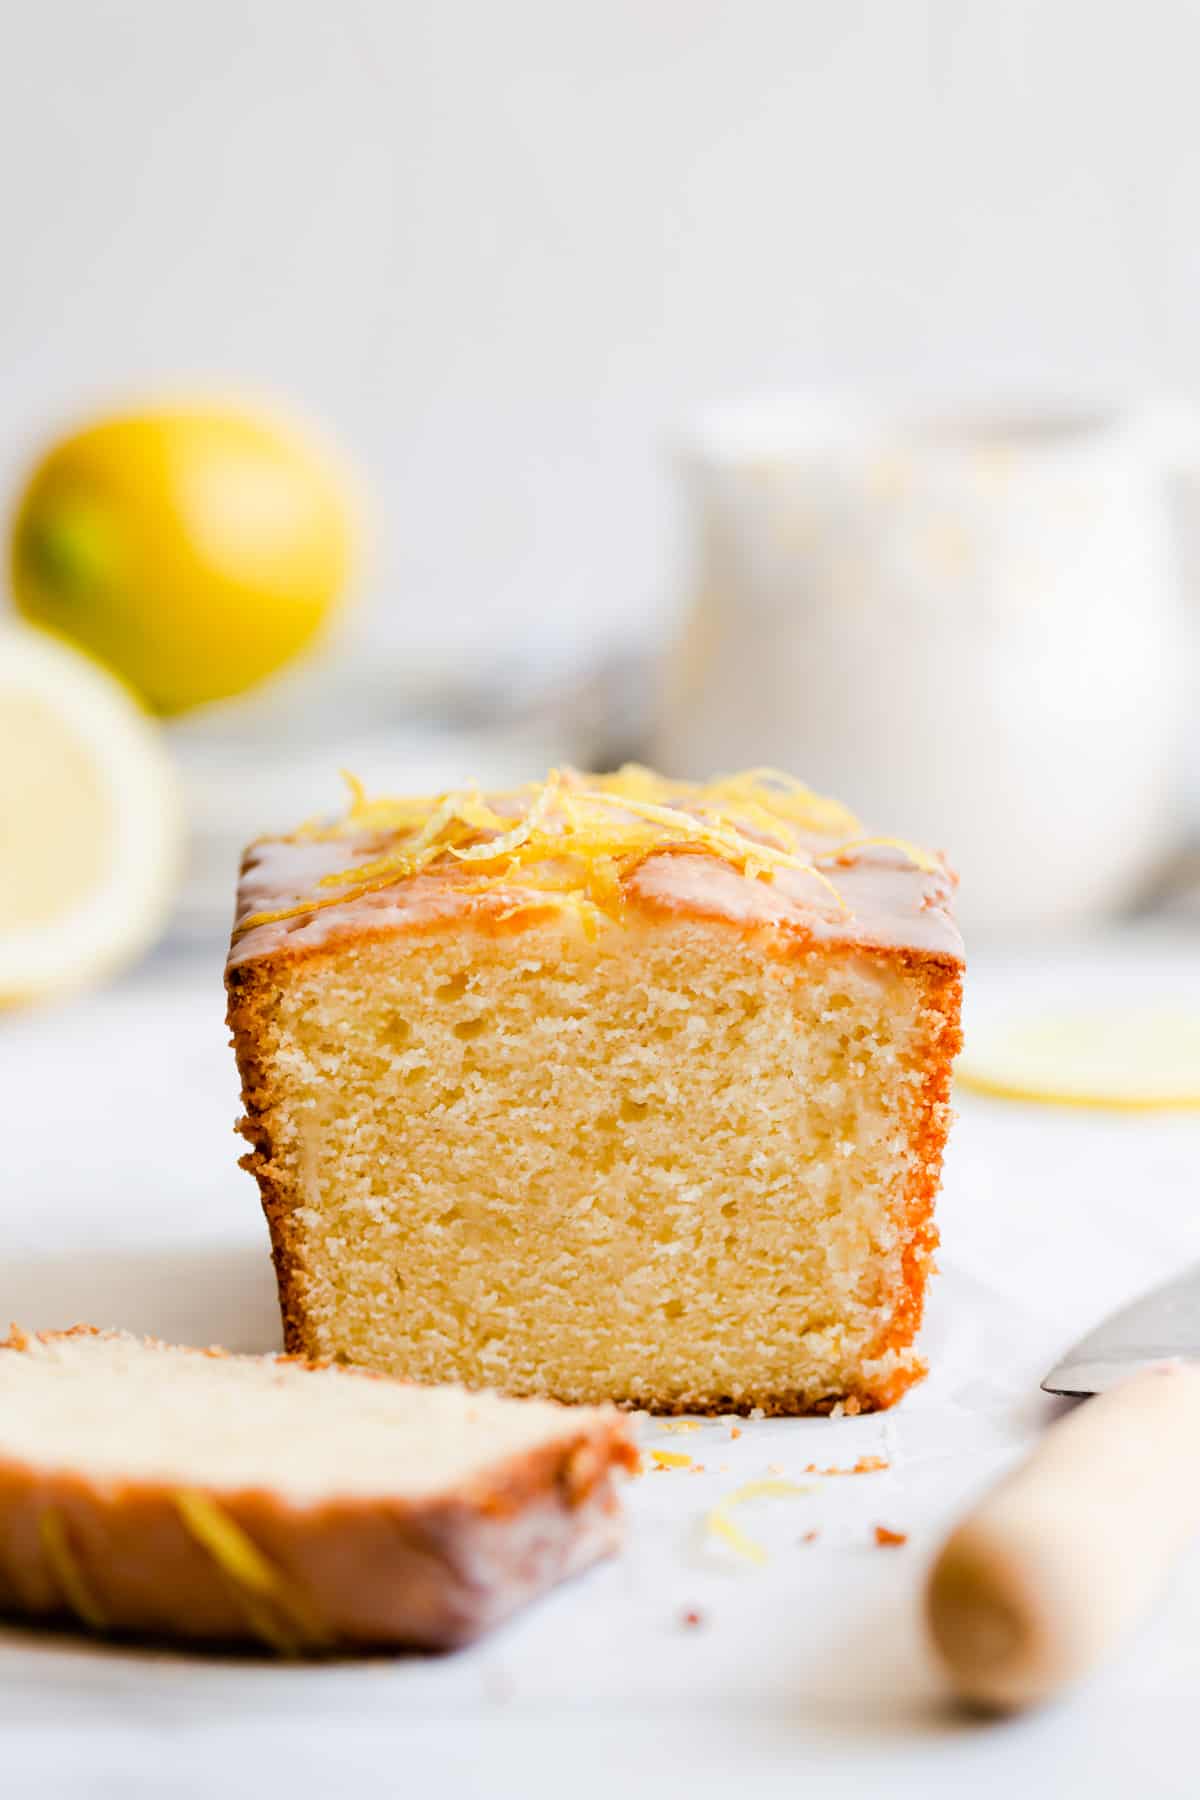 https://annabanana.co/wp-content/uploads/2020/05/Lemon-Drizzle-Cake-7.jpg